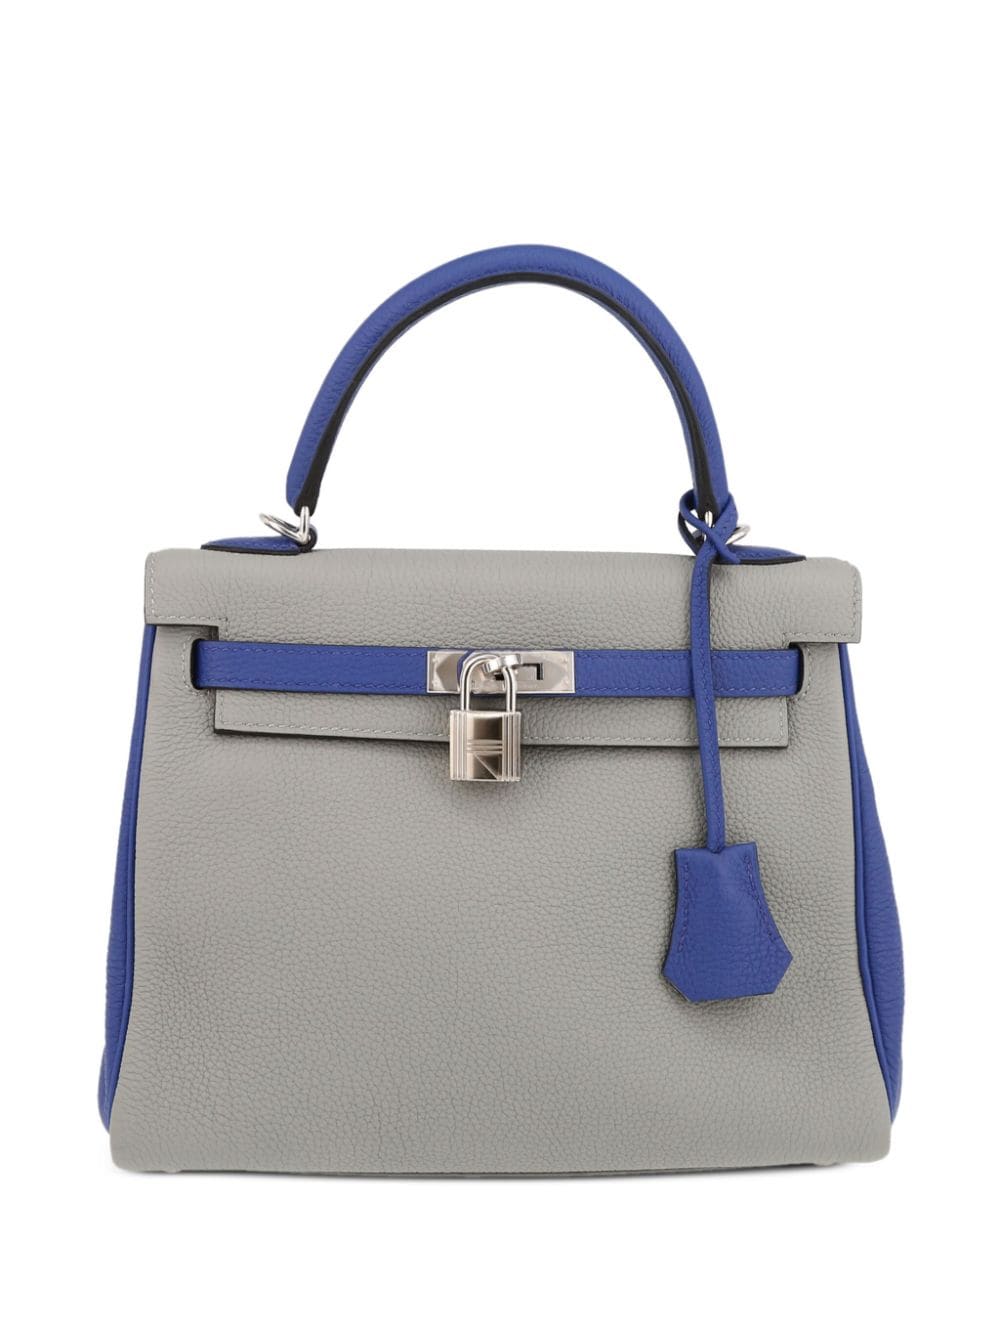 Hermès Pre-Owned Kelly 25 handbag - Grey von Hermès Pre-Owned